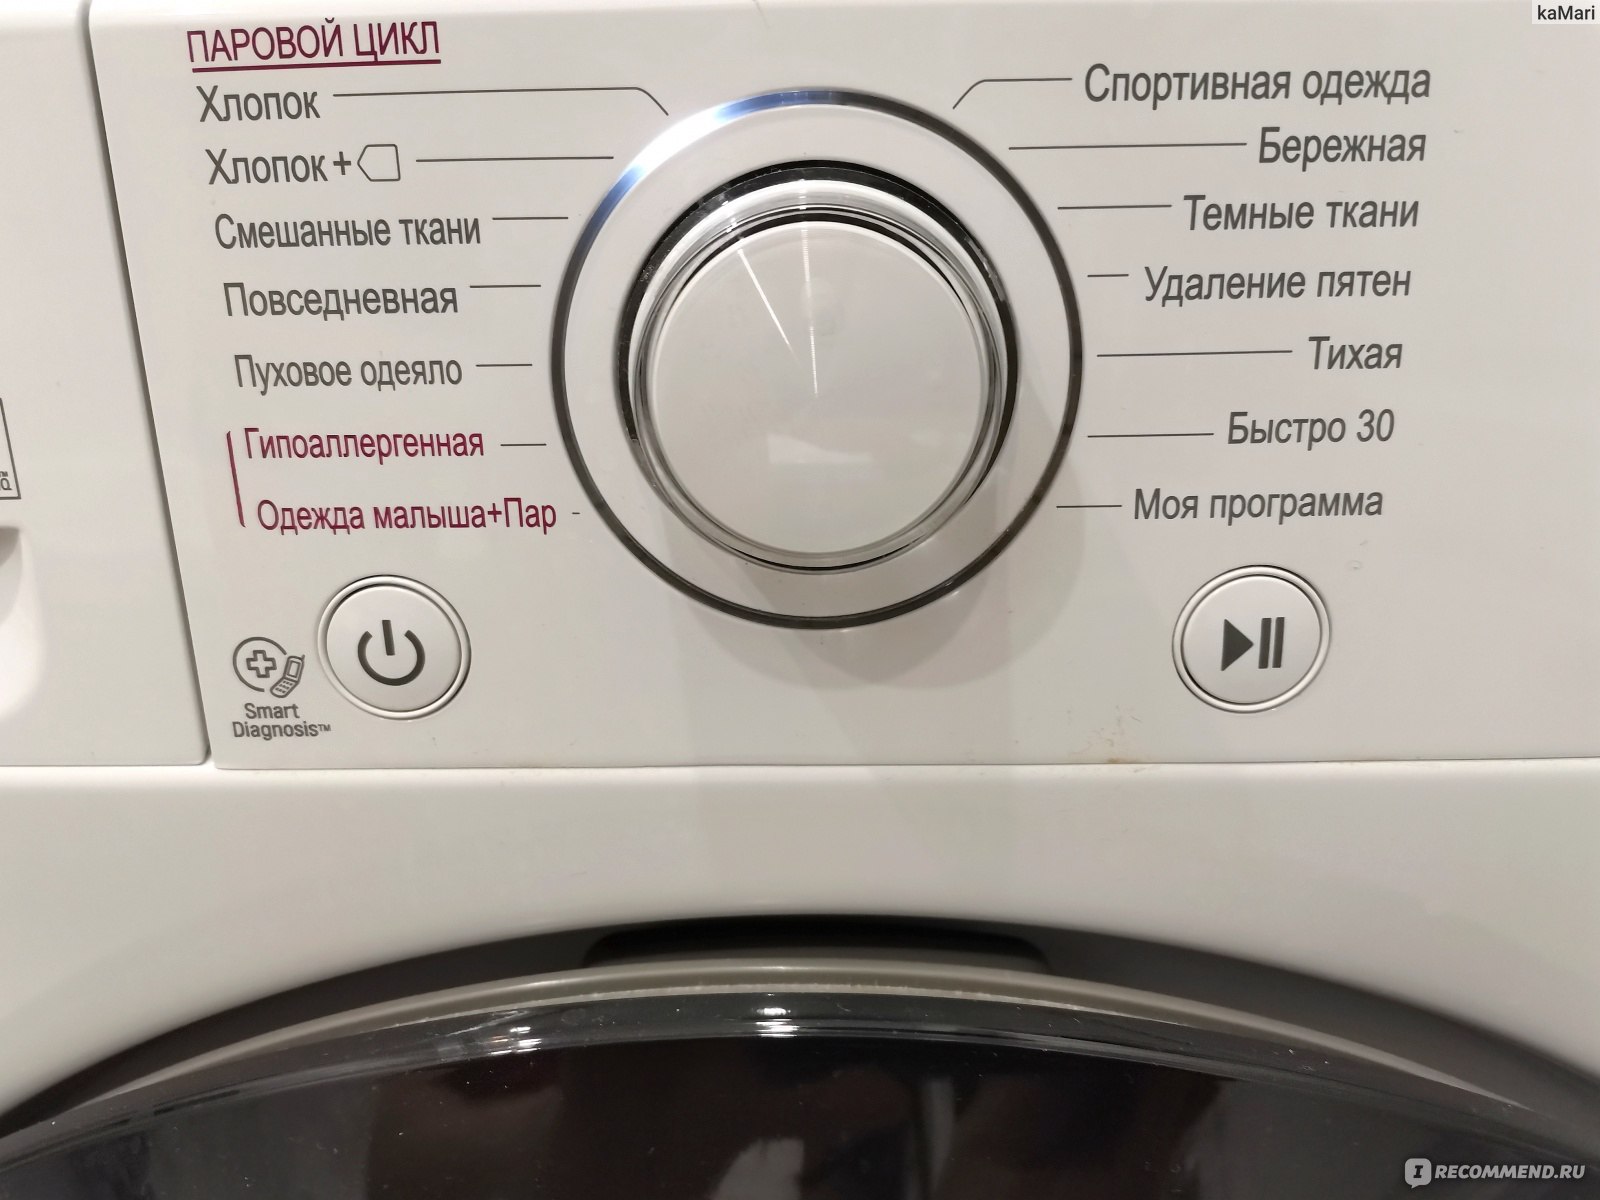 функция пара в стиральной машине steam что это такое фото 18